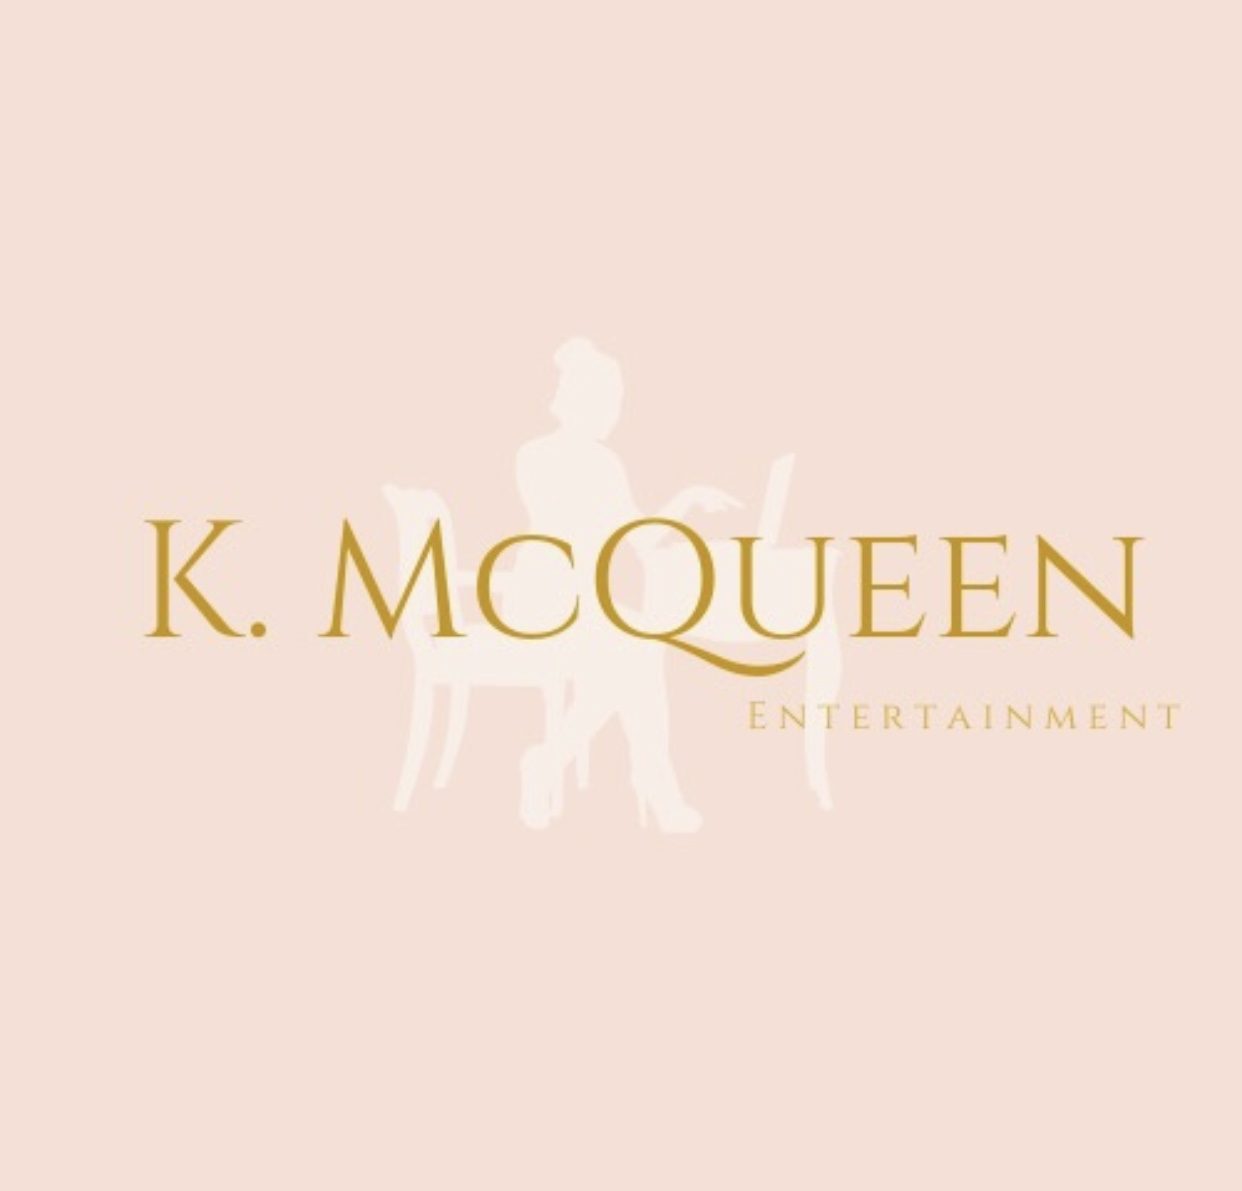 K. McQueen